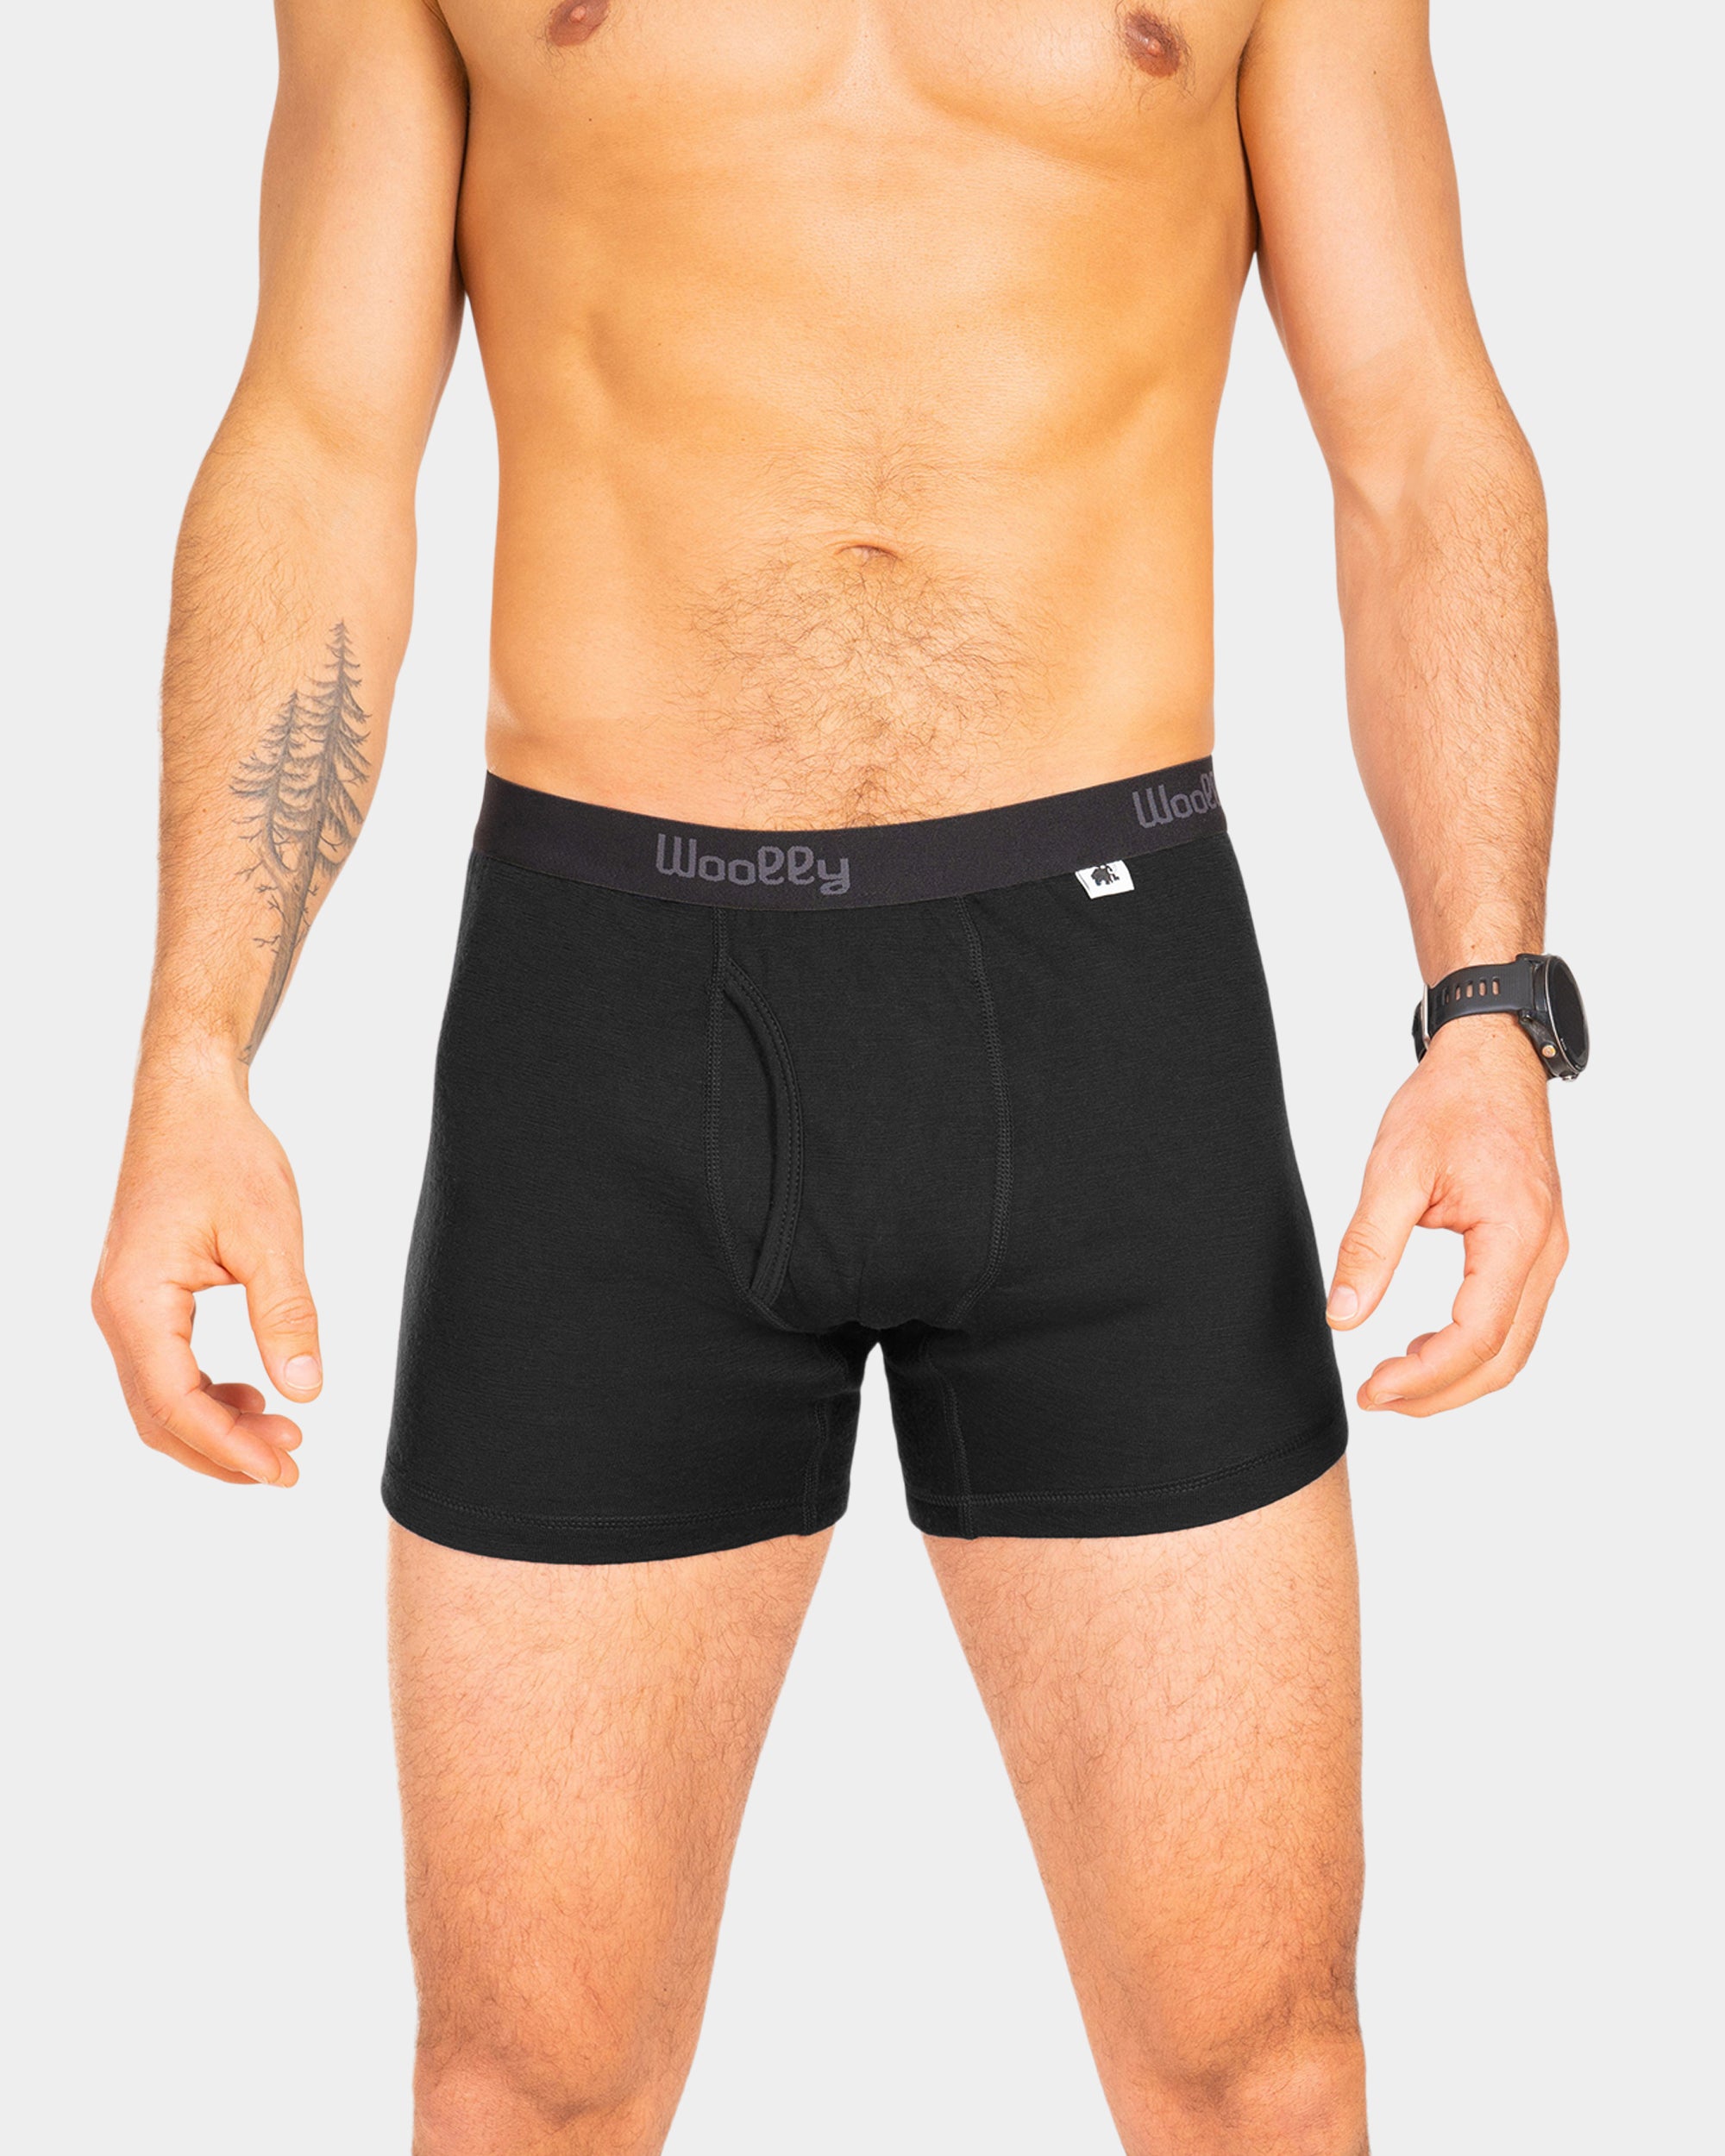 Organic Mens Underwear Boxer Shorts for Men Merino Wool Boxer Briefs  Organic Sustainable Underwear 